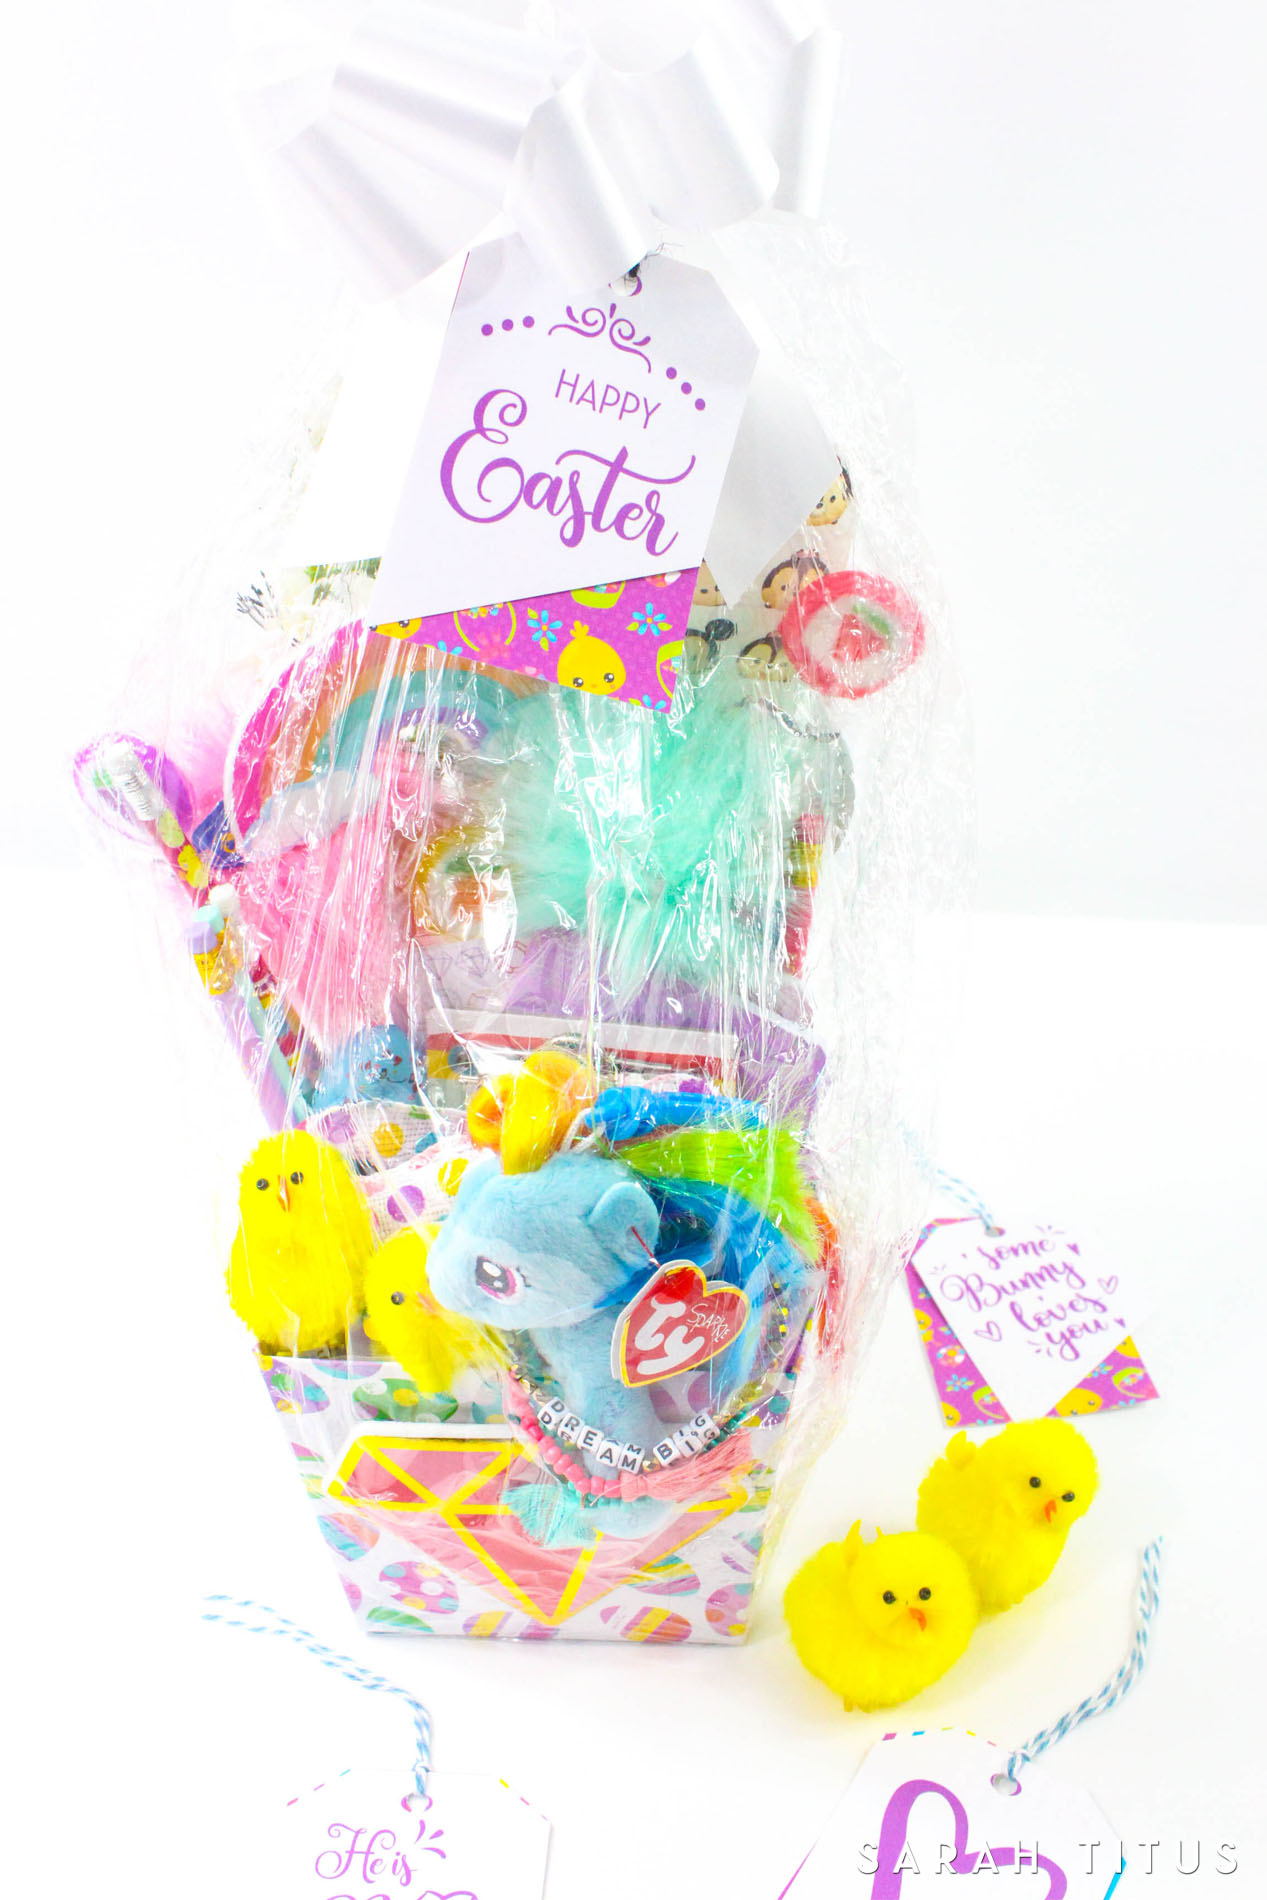 Free Printable Easter Gift Tags - Sarah Titus - Free Easter Name Tags Printable